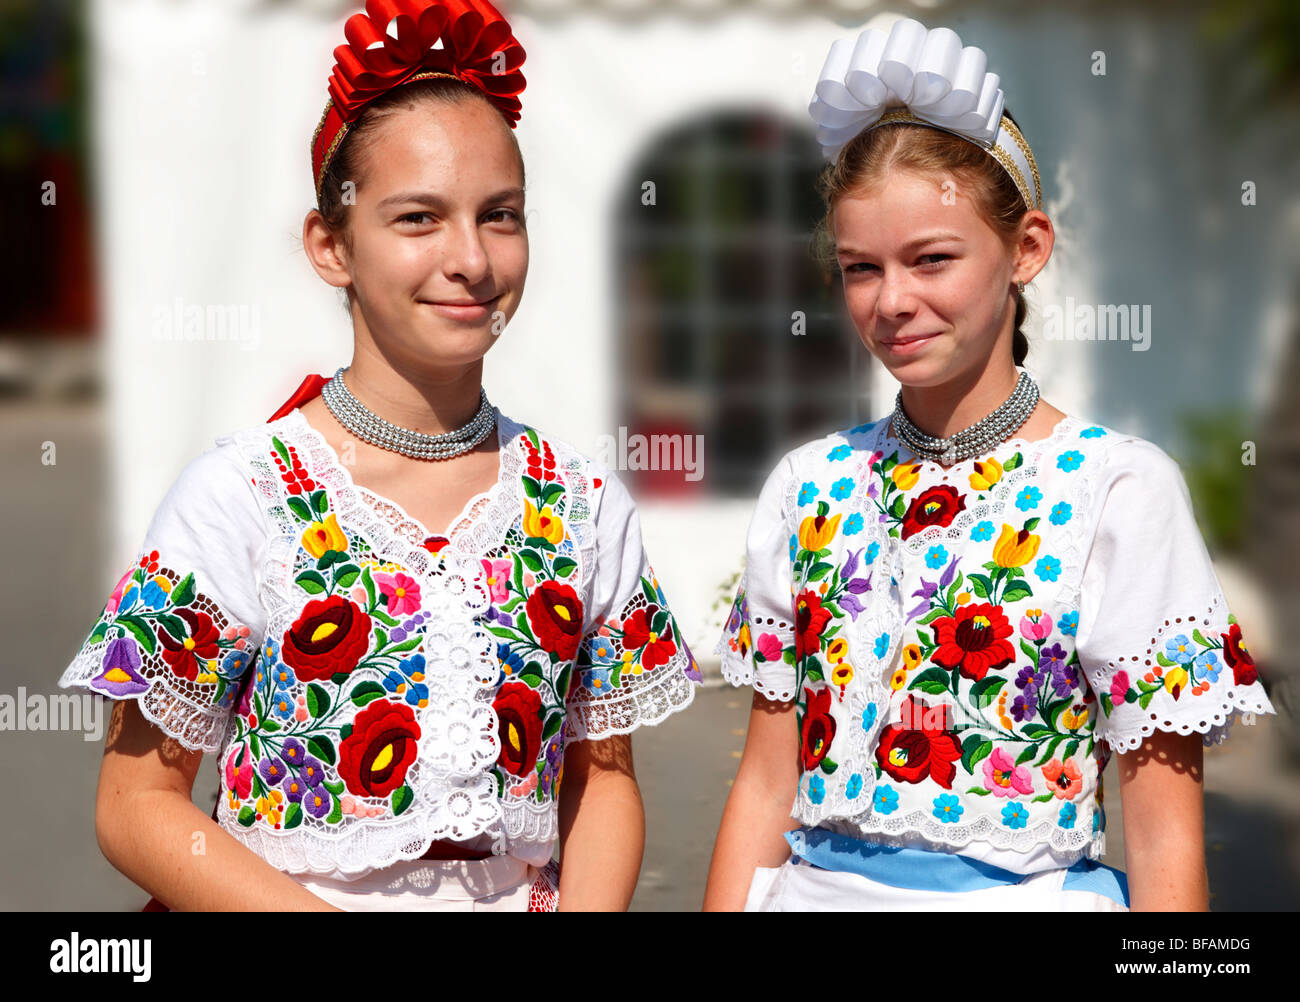 Les jeunes femmes en robe traditionnelle à l'paprka Kalocsa festival, Kalocsa, Hongrie Banque D'Images